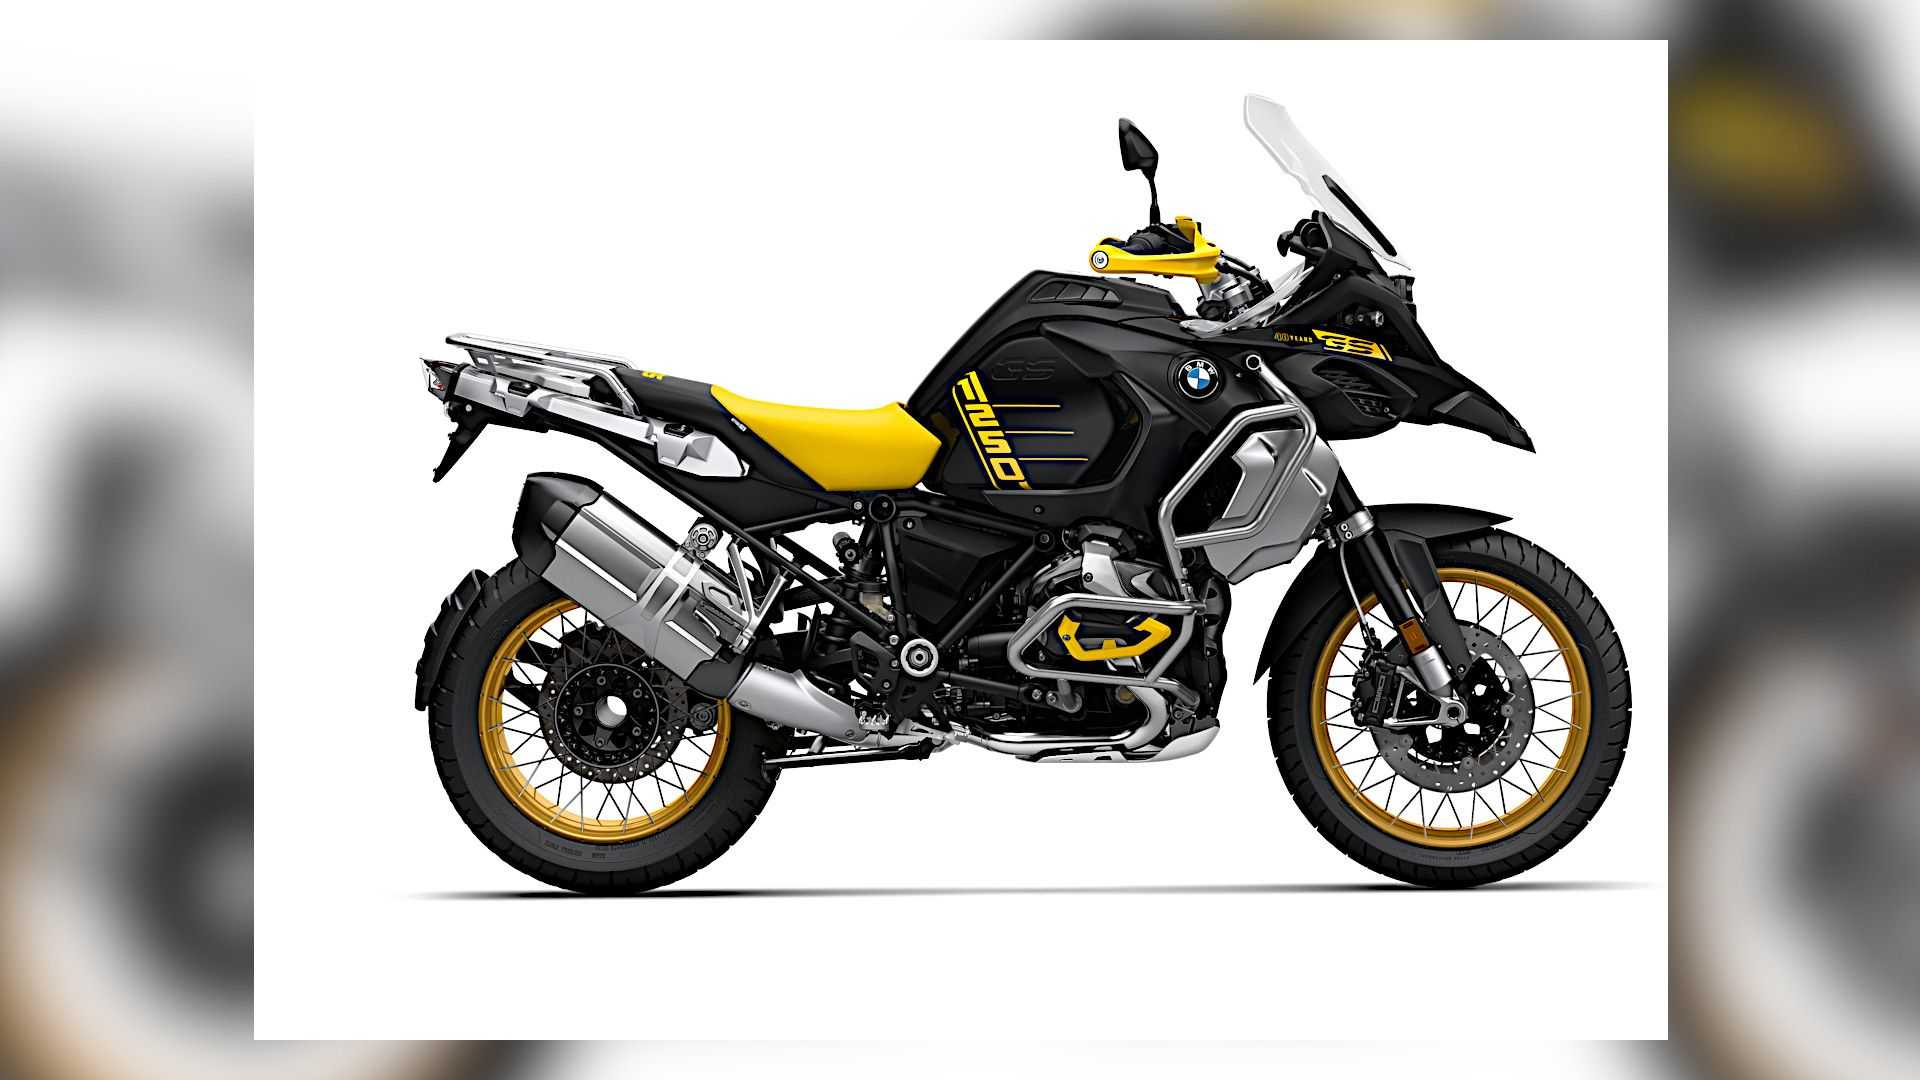 نمای کناری موتورسیکلت بی ام و / 2021 BMW R 1250 GS با رنگ زرد و سیاه